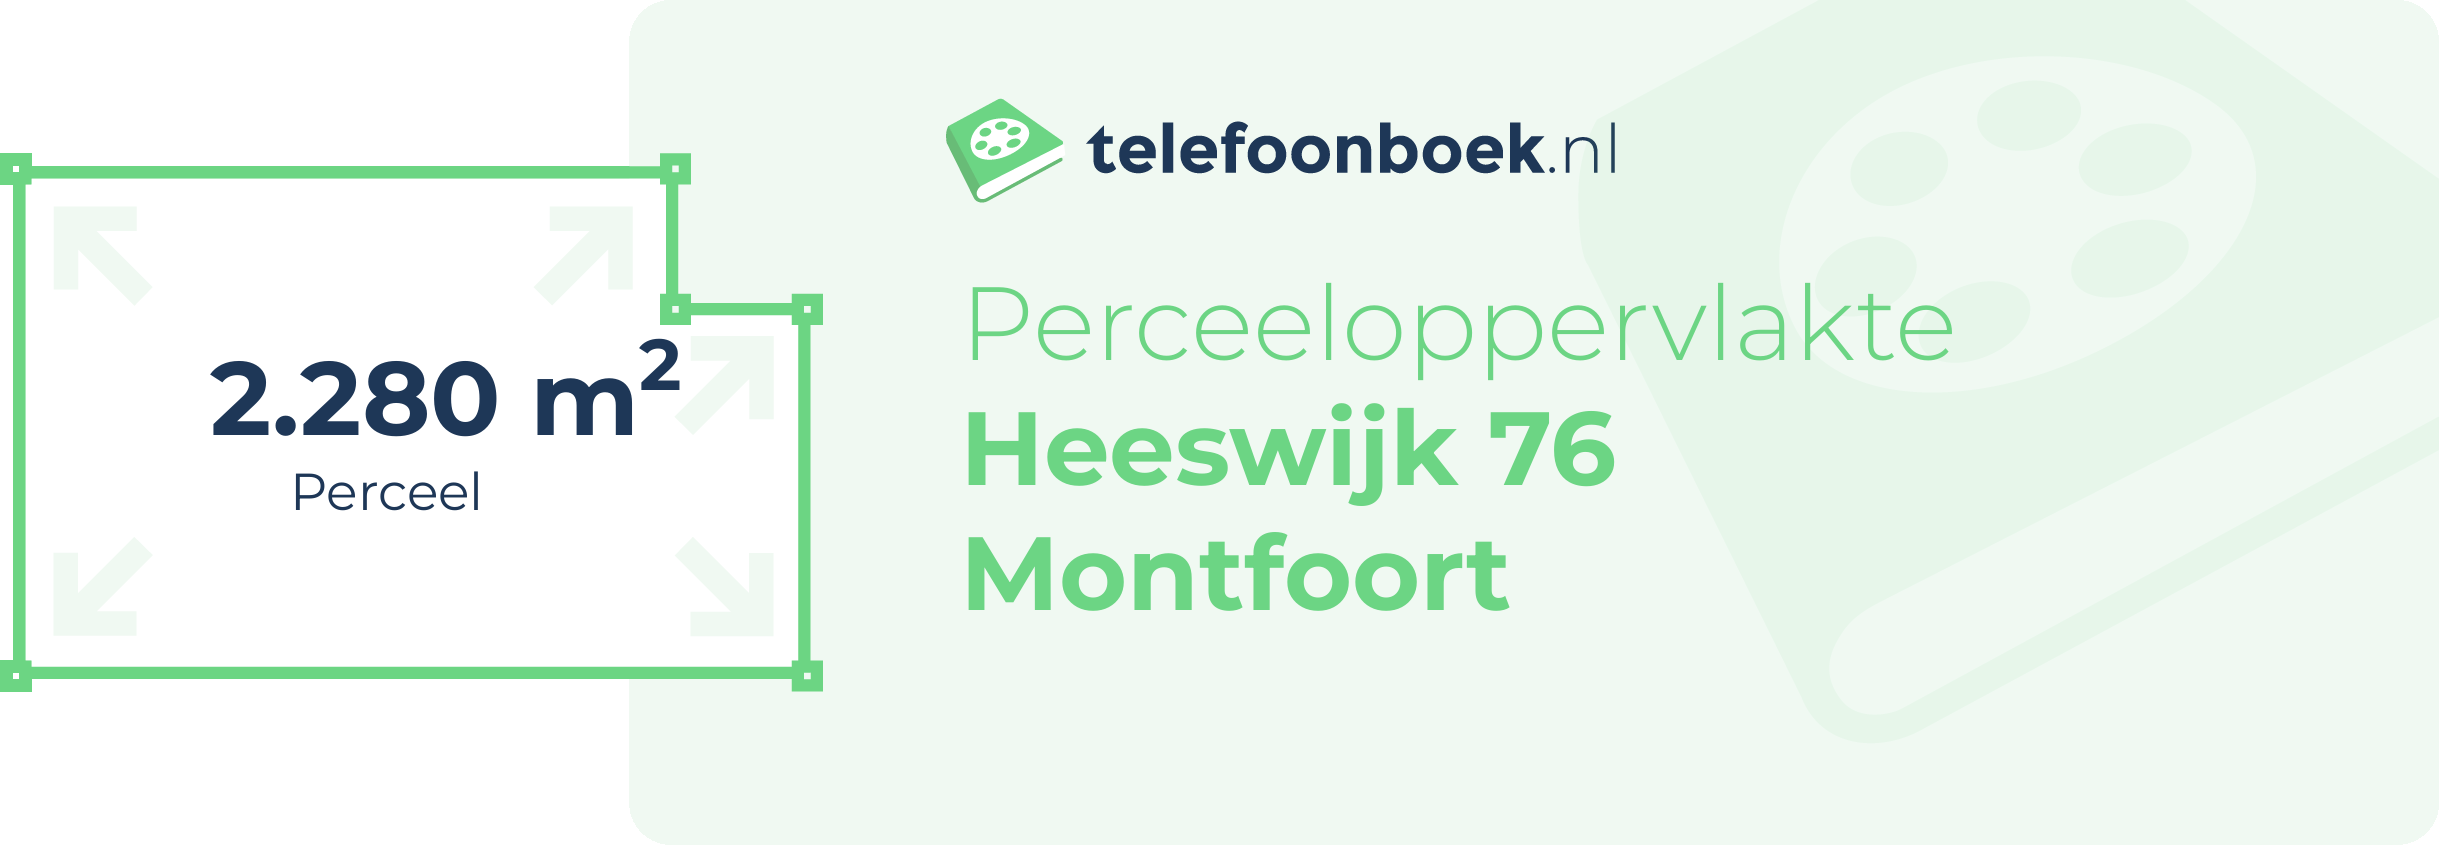 Perceeloppervlakte Heeswijk 76 Montfoort